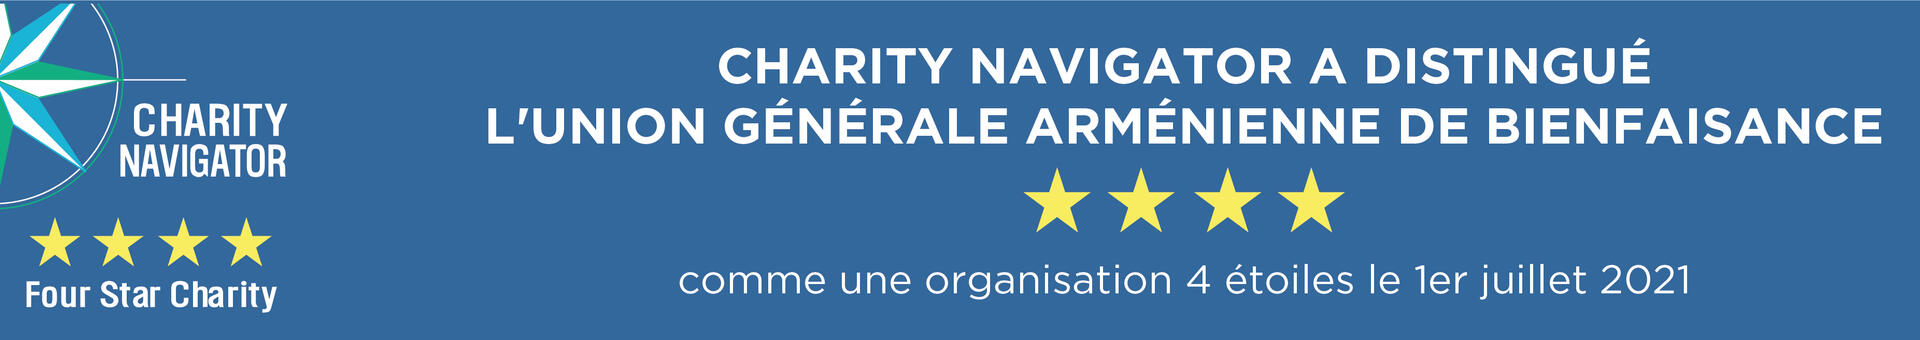 Charity Navigator a distingué l'Union Générale Arménienne de Bienfaisance